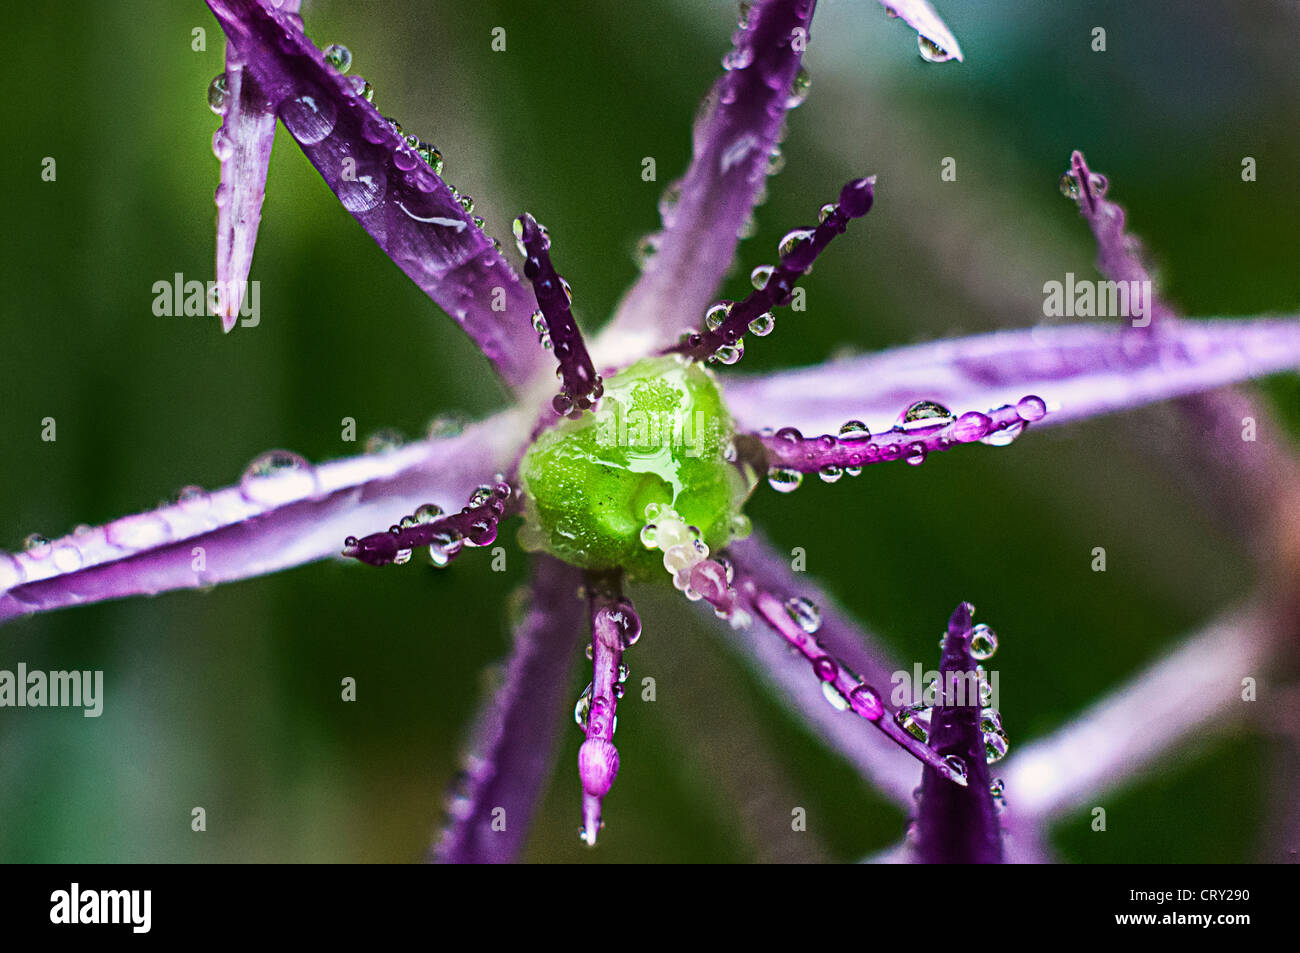 Allium purple flower macro photographie avec des gouttelettes de pluie sur les pétales Banque D'Images